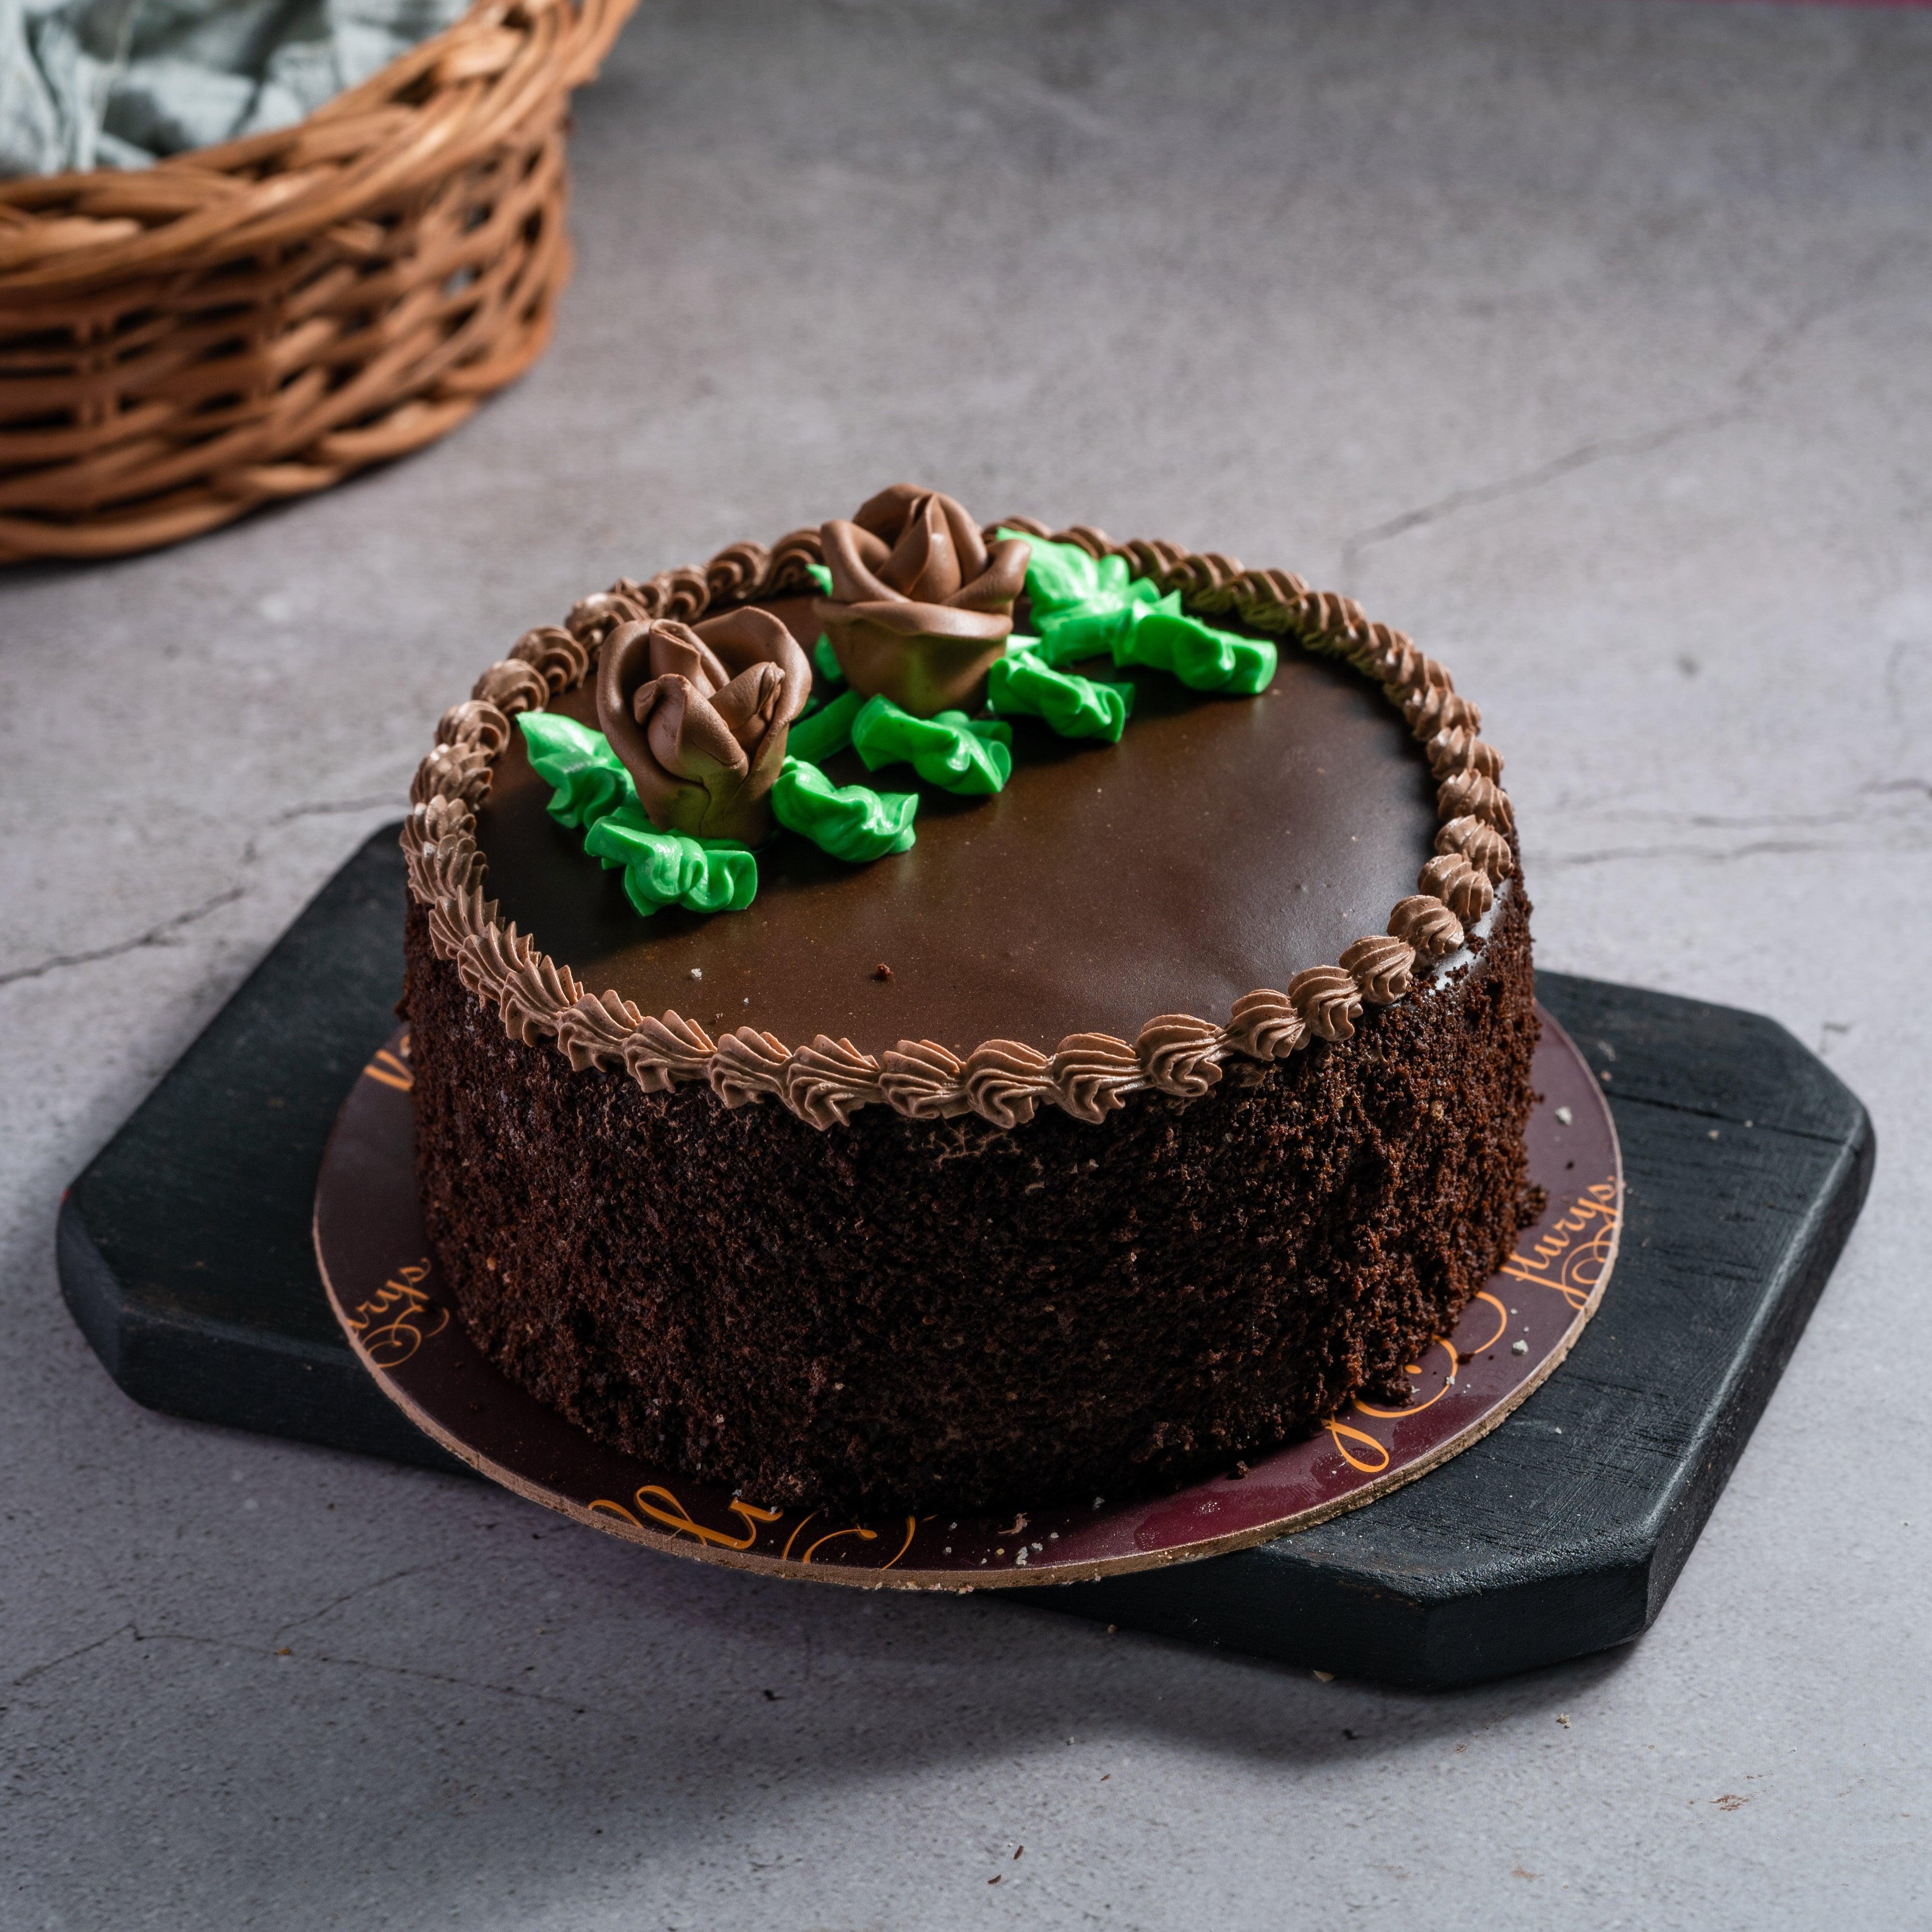 Chocolate Birthday Cake - White and Dark chocolate Brisbane Cake Delivery